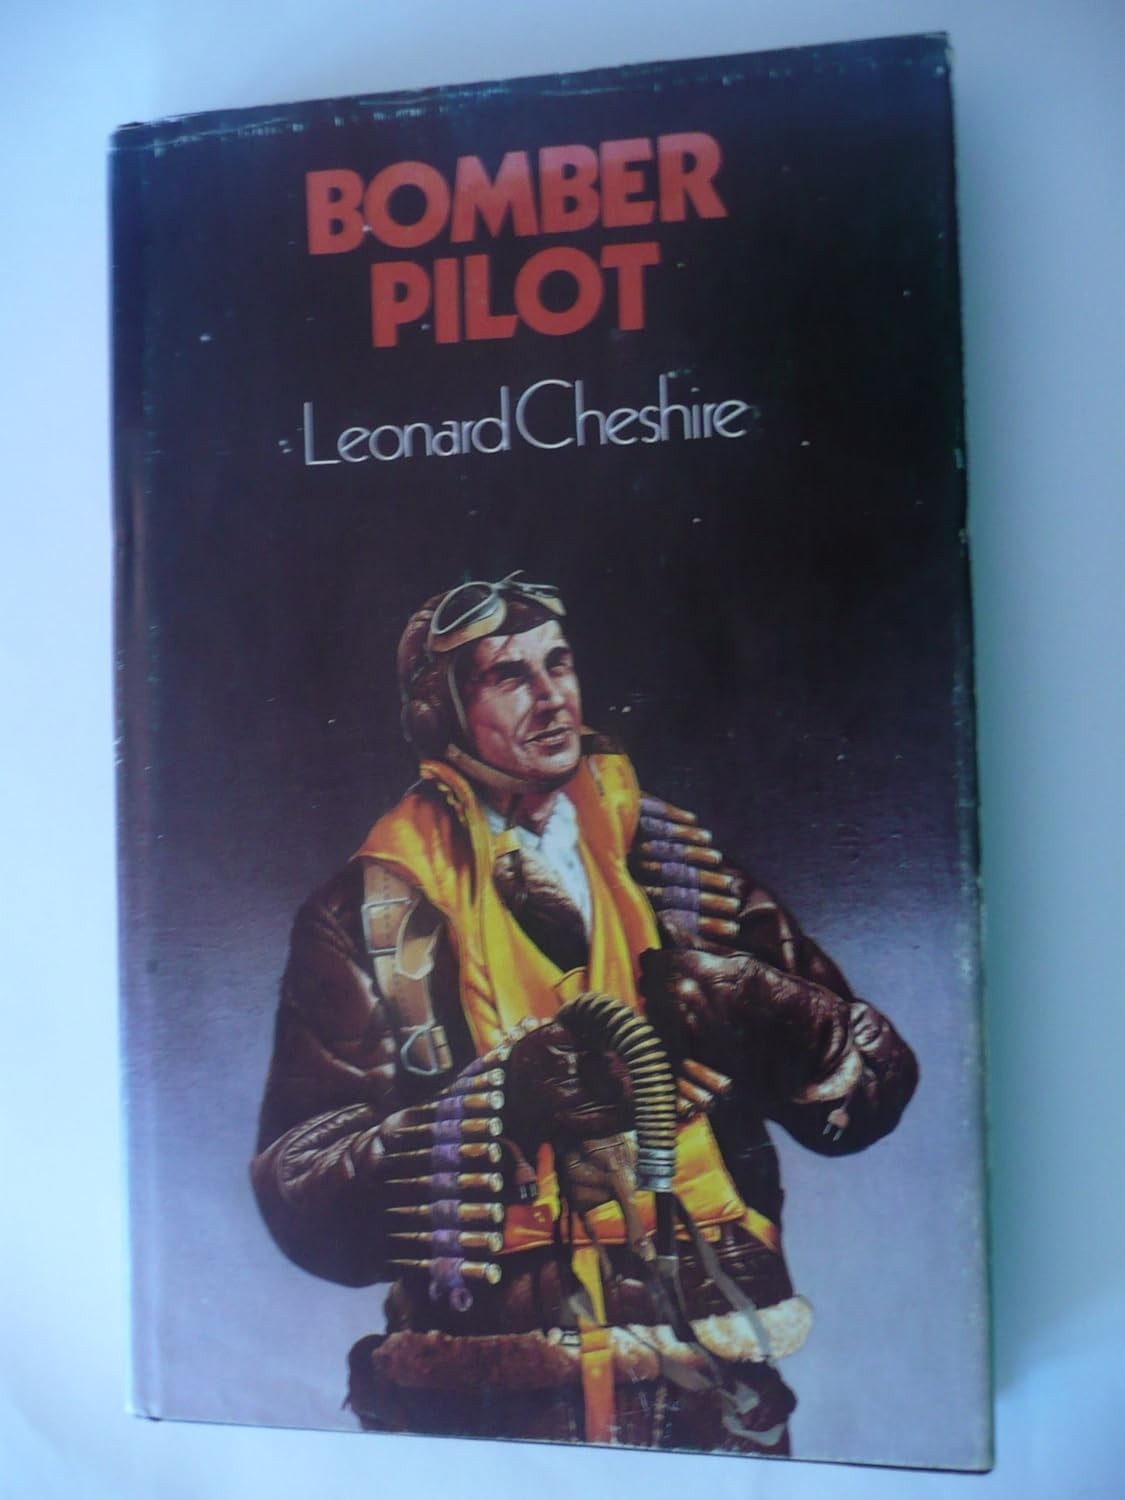 Bomber Pilot by Leonard Cheshire